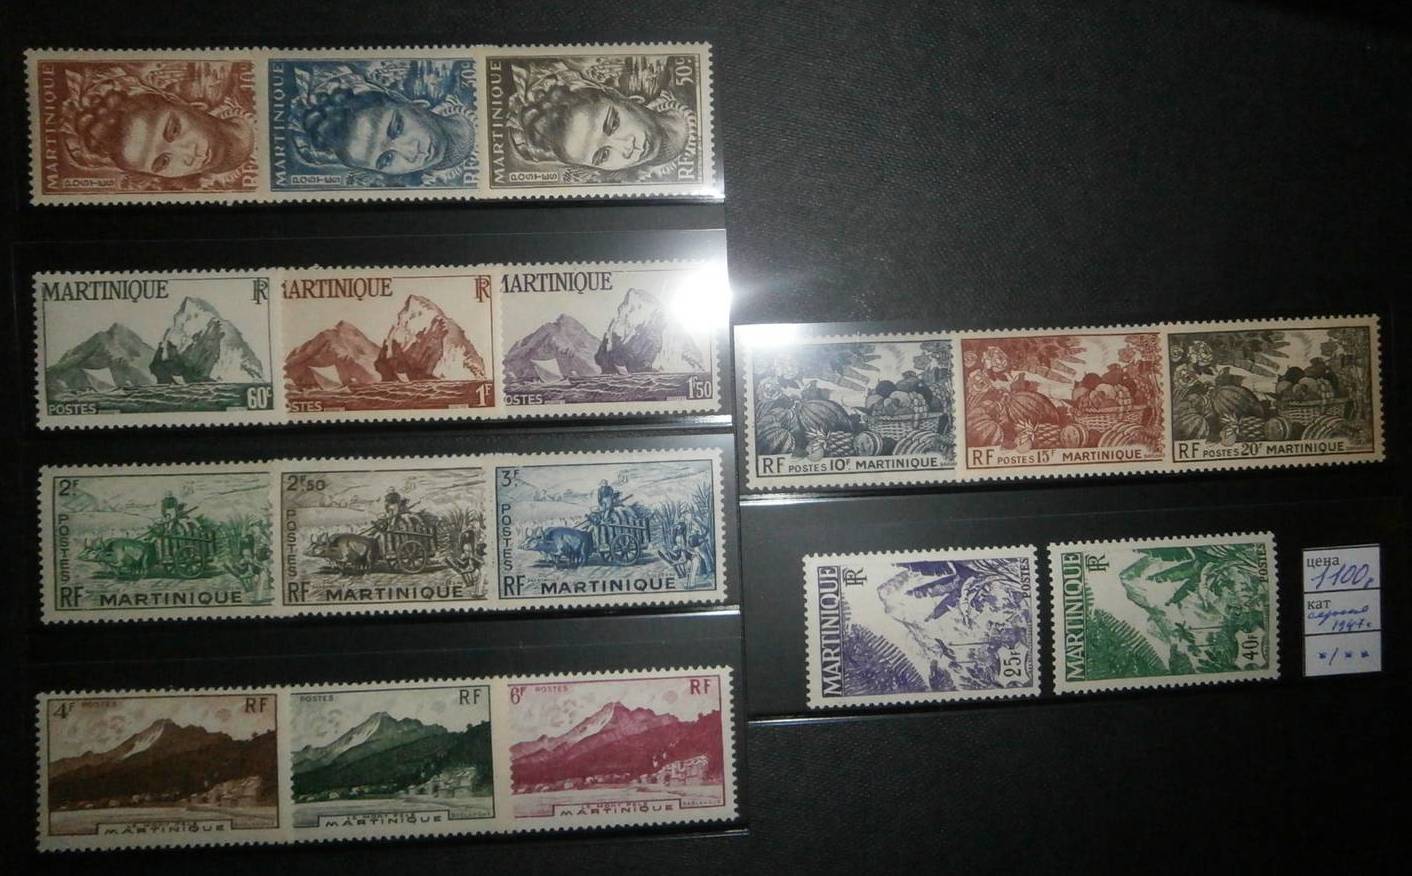 Название марка первого. Почтовые марки французской колонии Мартиника. Германские колониальные марки. Почтовые марки колонии. Почтовые марки немецких колоний.